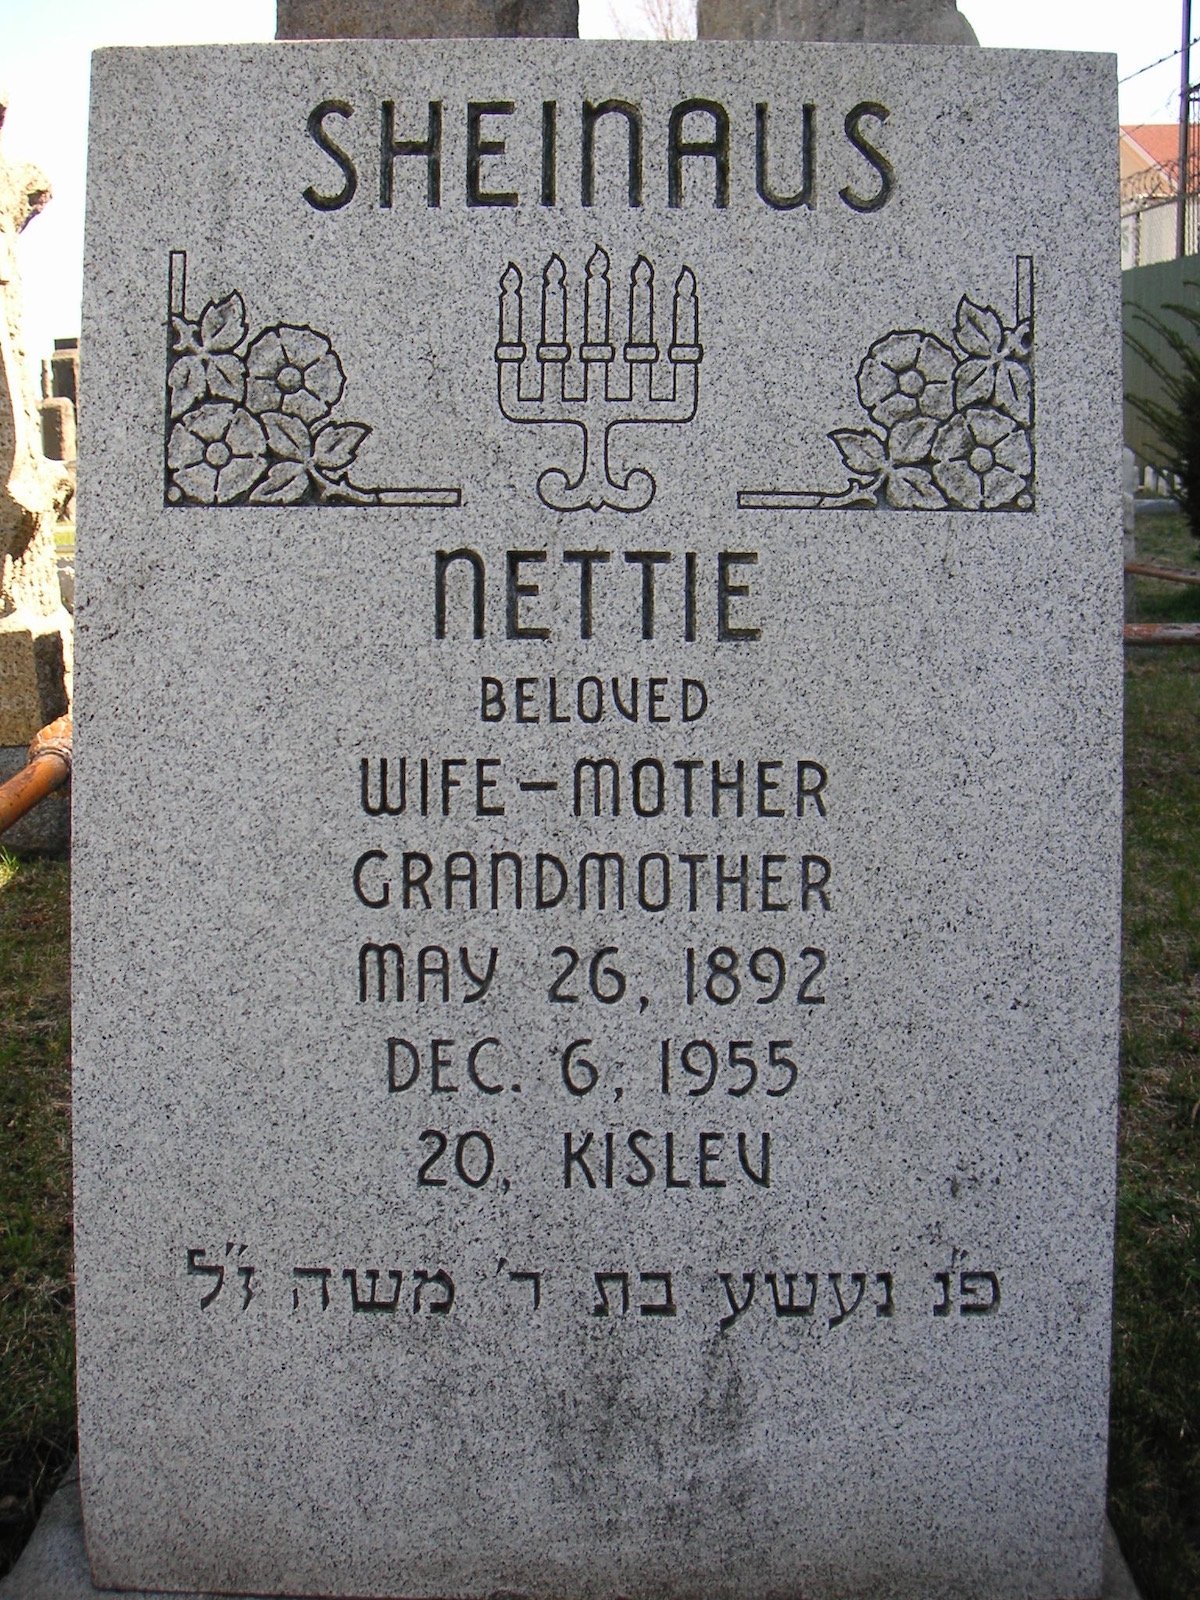 Nettie Sheinaus, Headstone, Washington Cemetary 2006